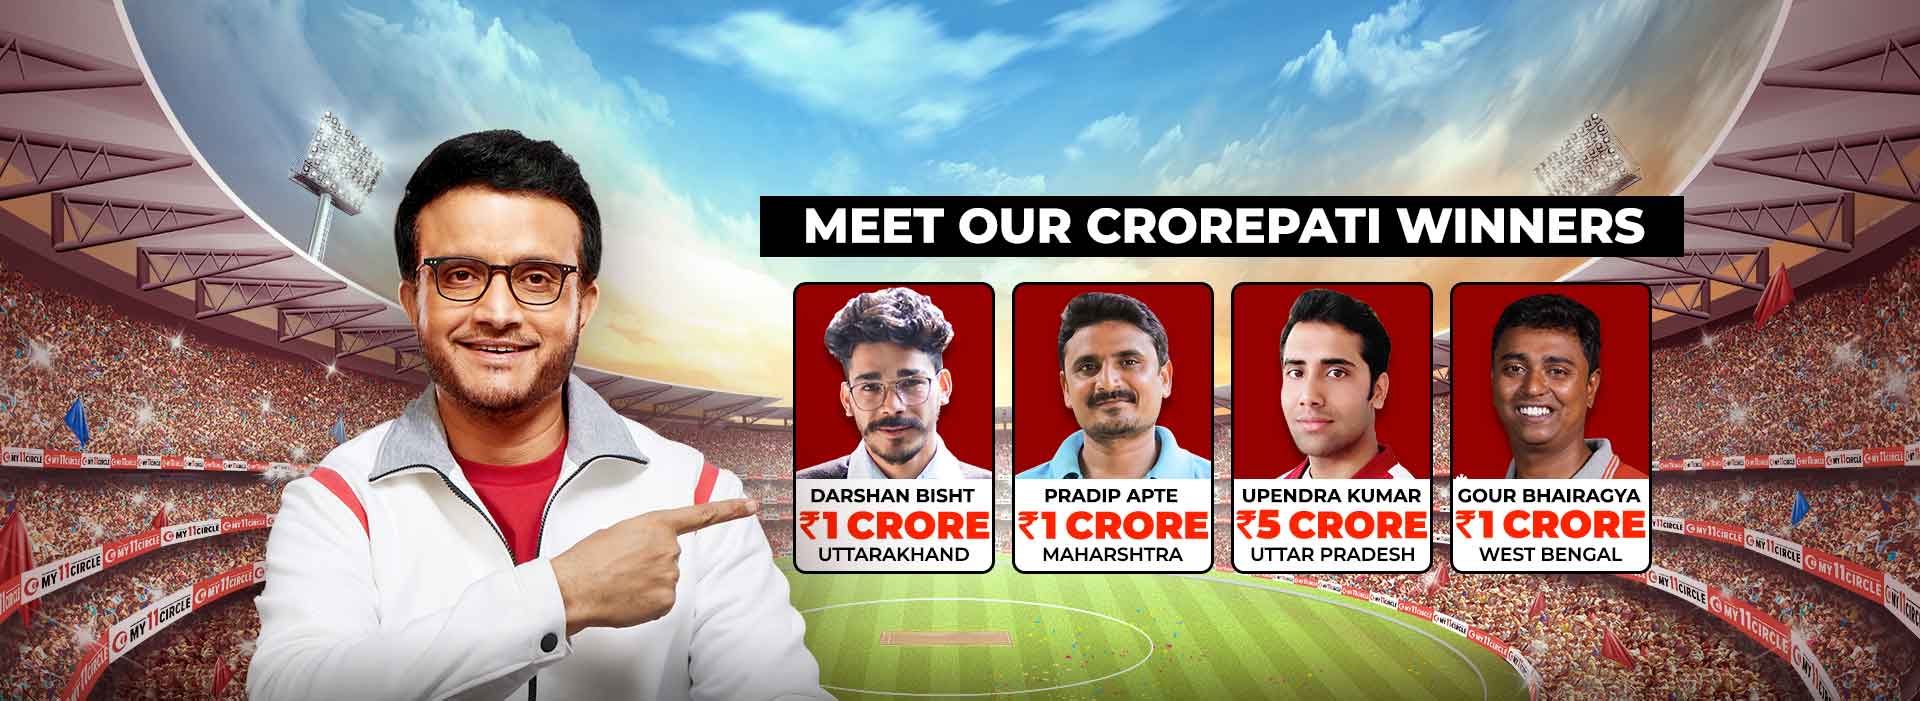 Meet Our Crorepati Winners